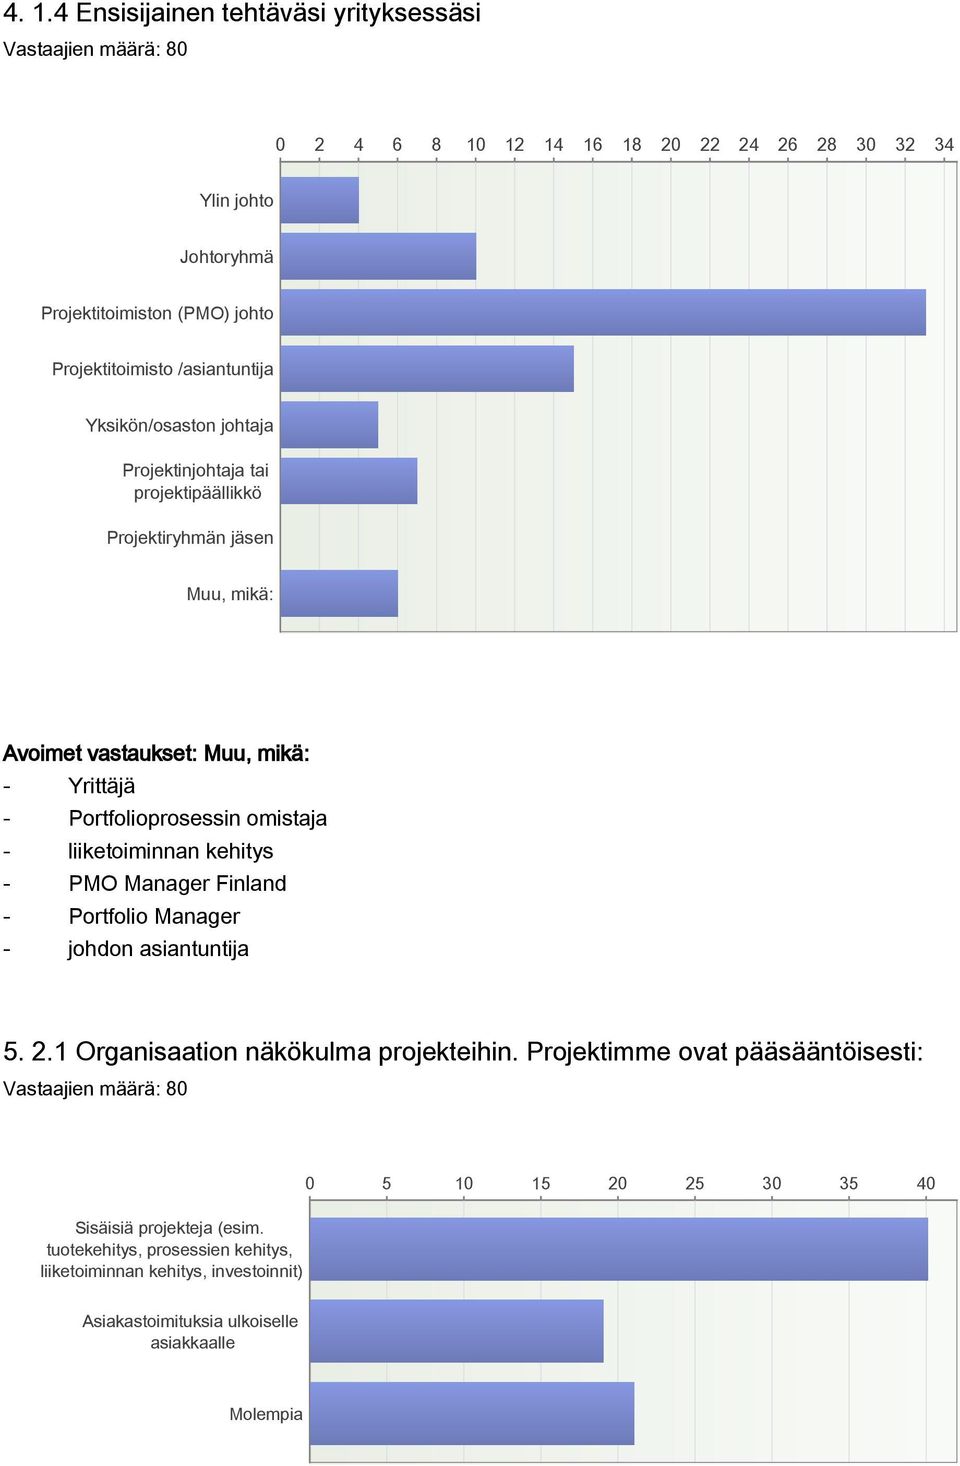 omistaja - liiketoiminnan kehitys - PMO Manager Finland - Portfolio Manager - johdon asiantuntija 5. 2.1 Organisaation näkökulma projekteihin.